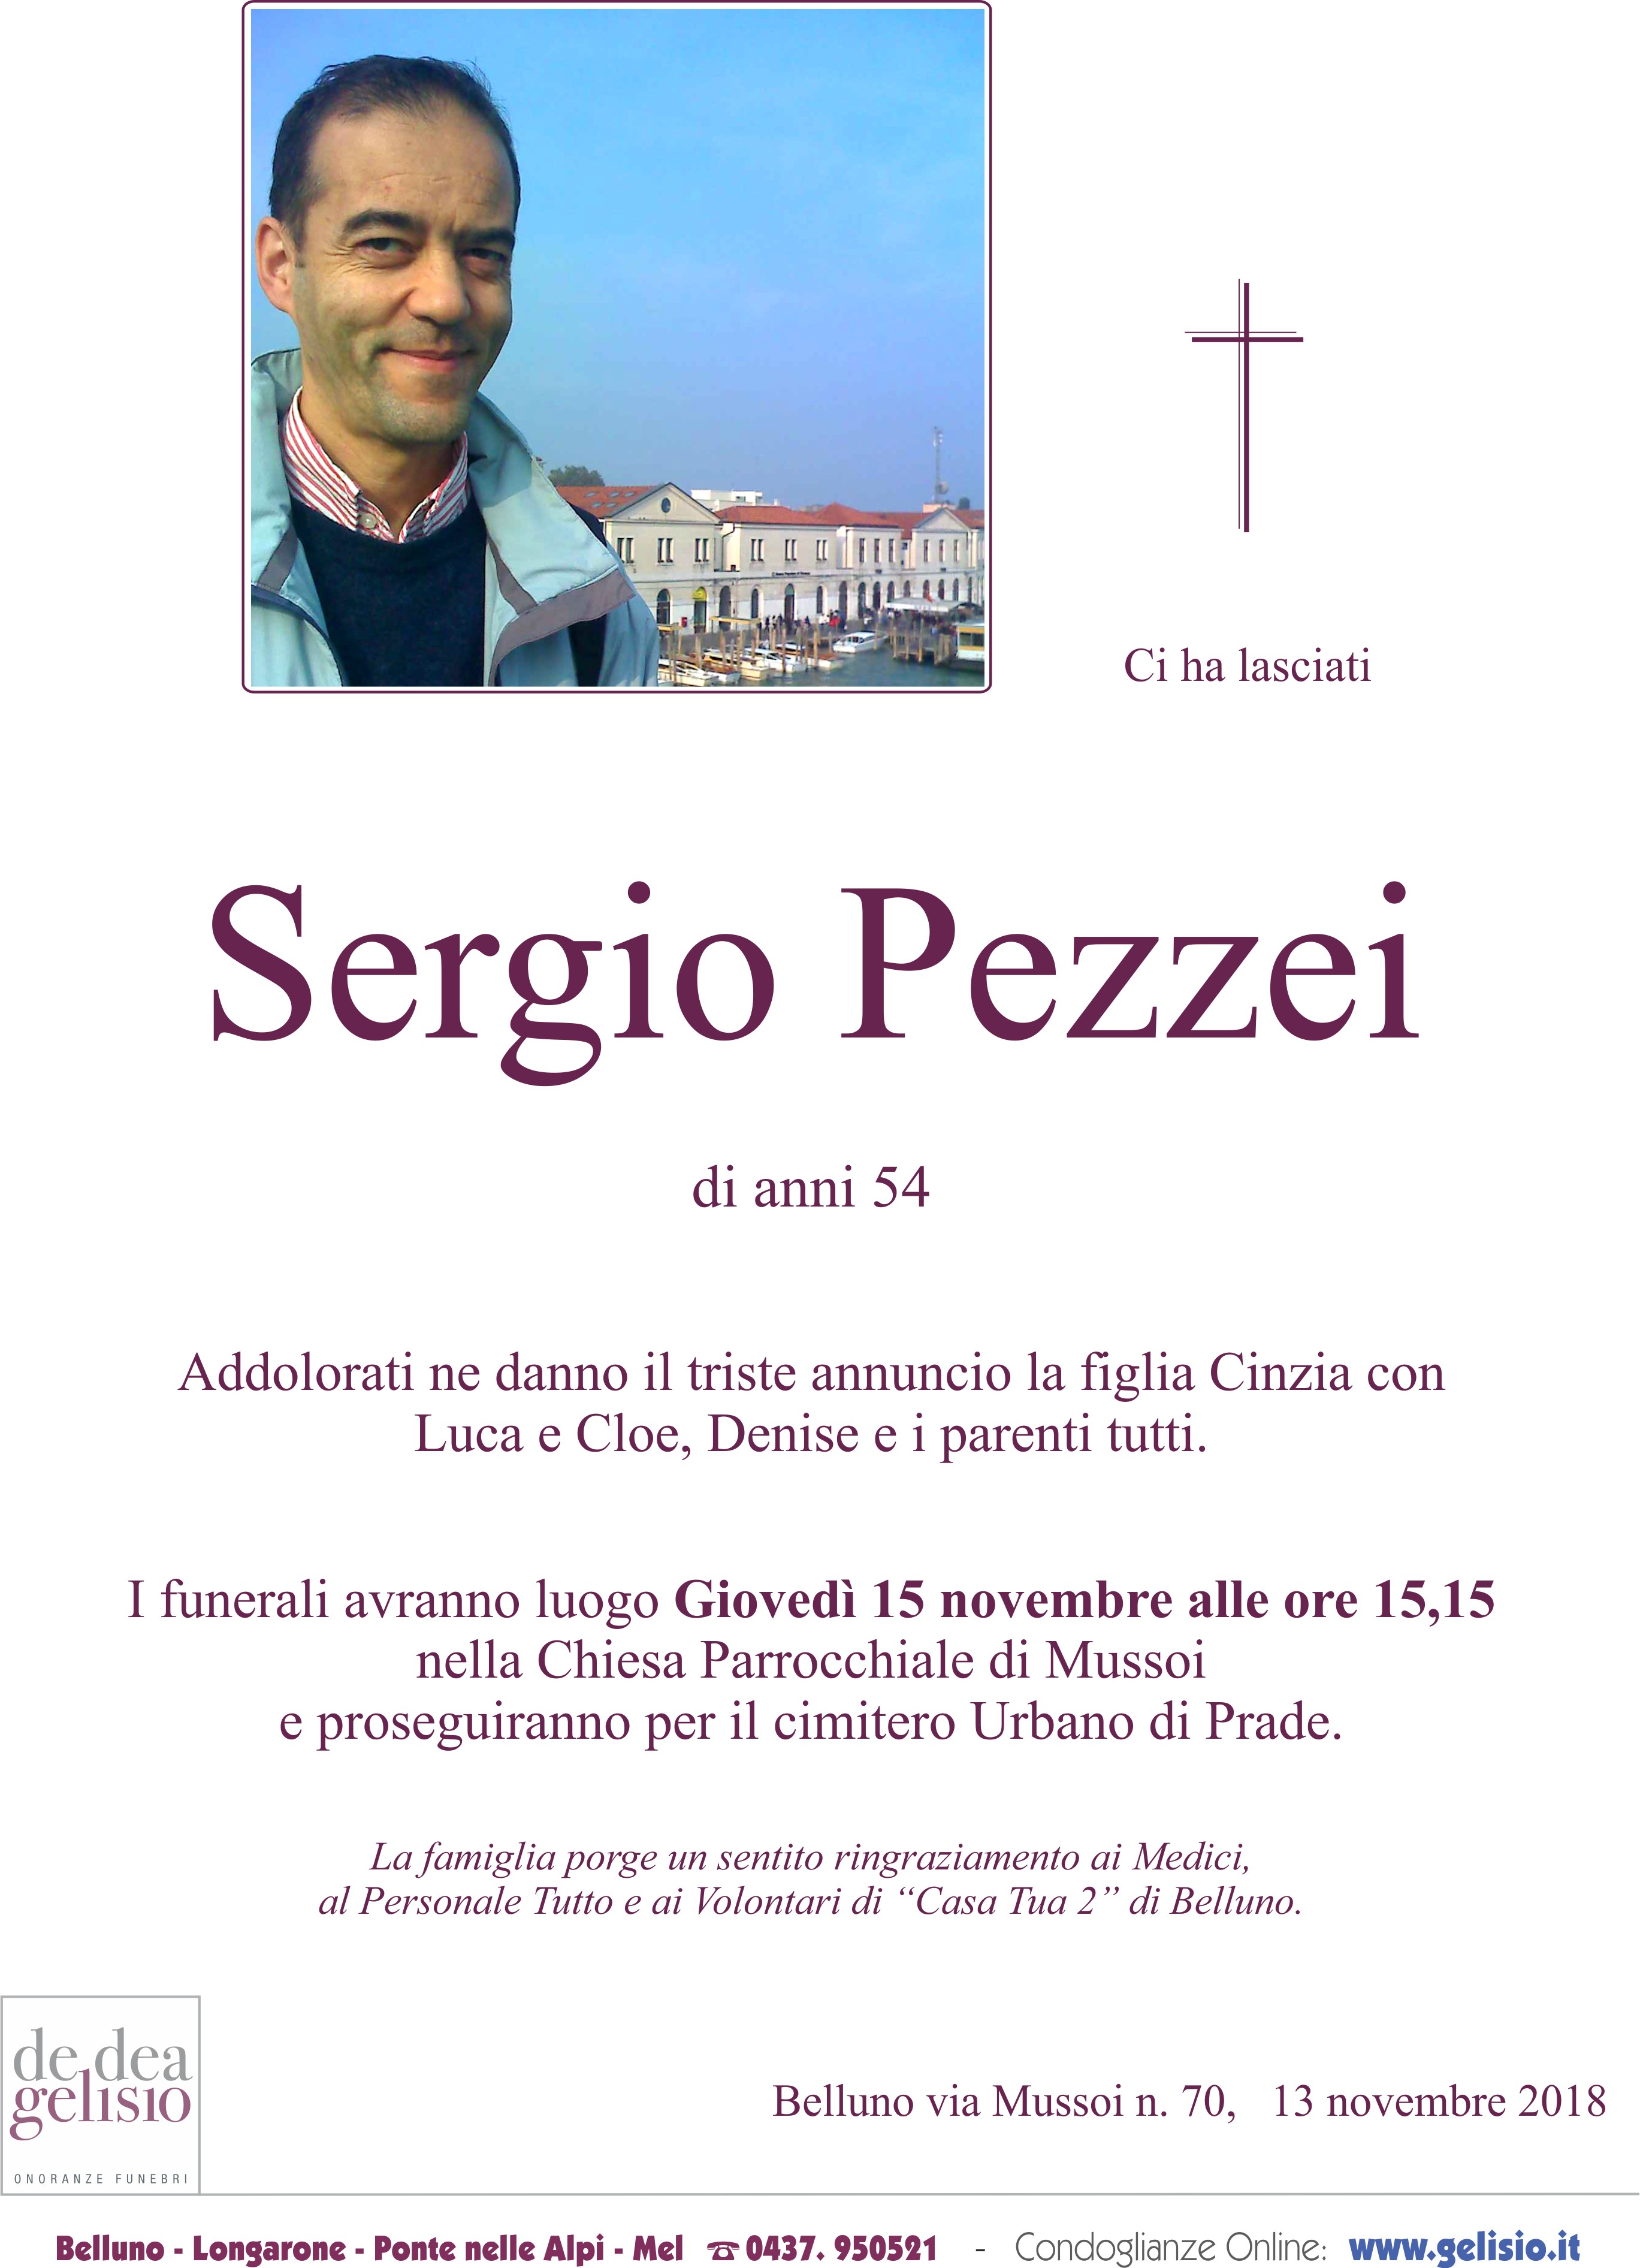 Pezzei Sergio